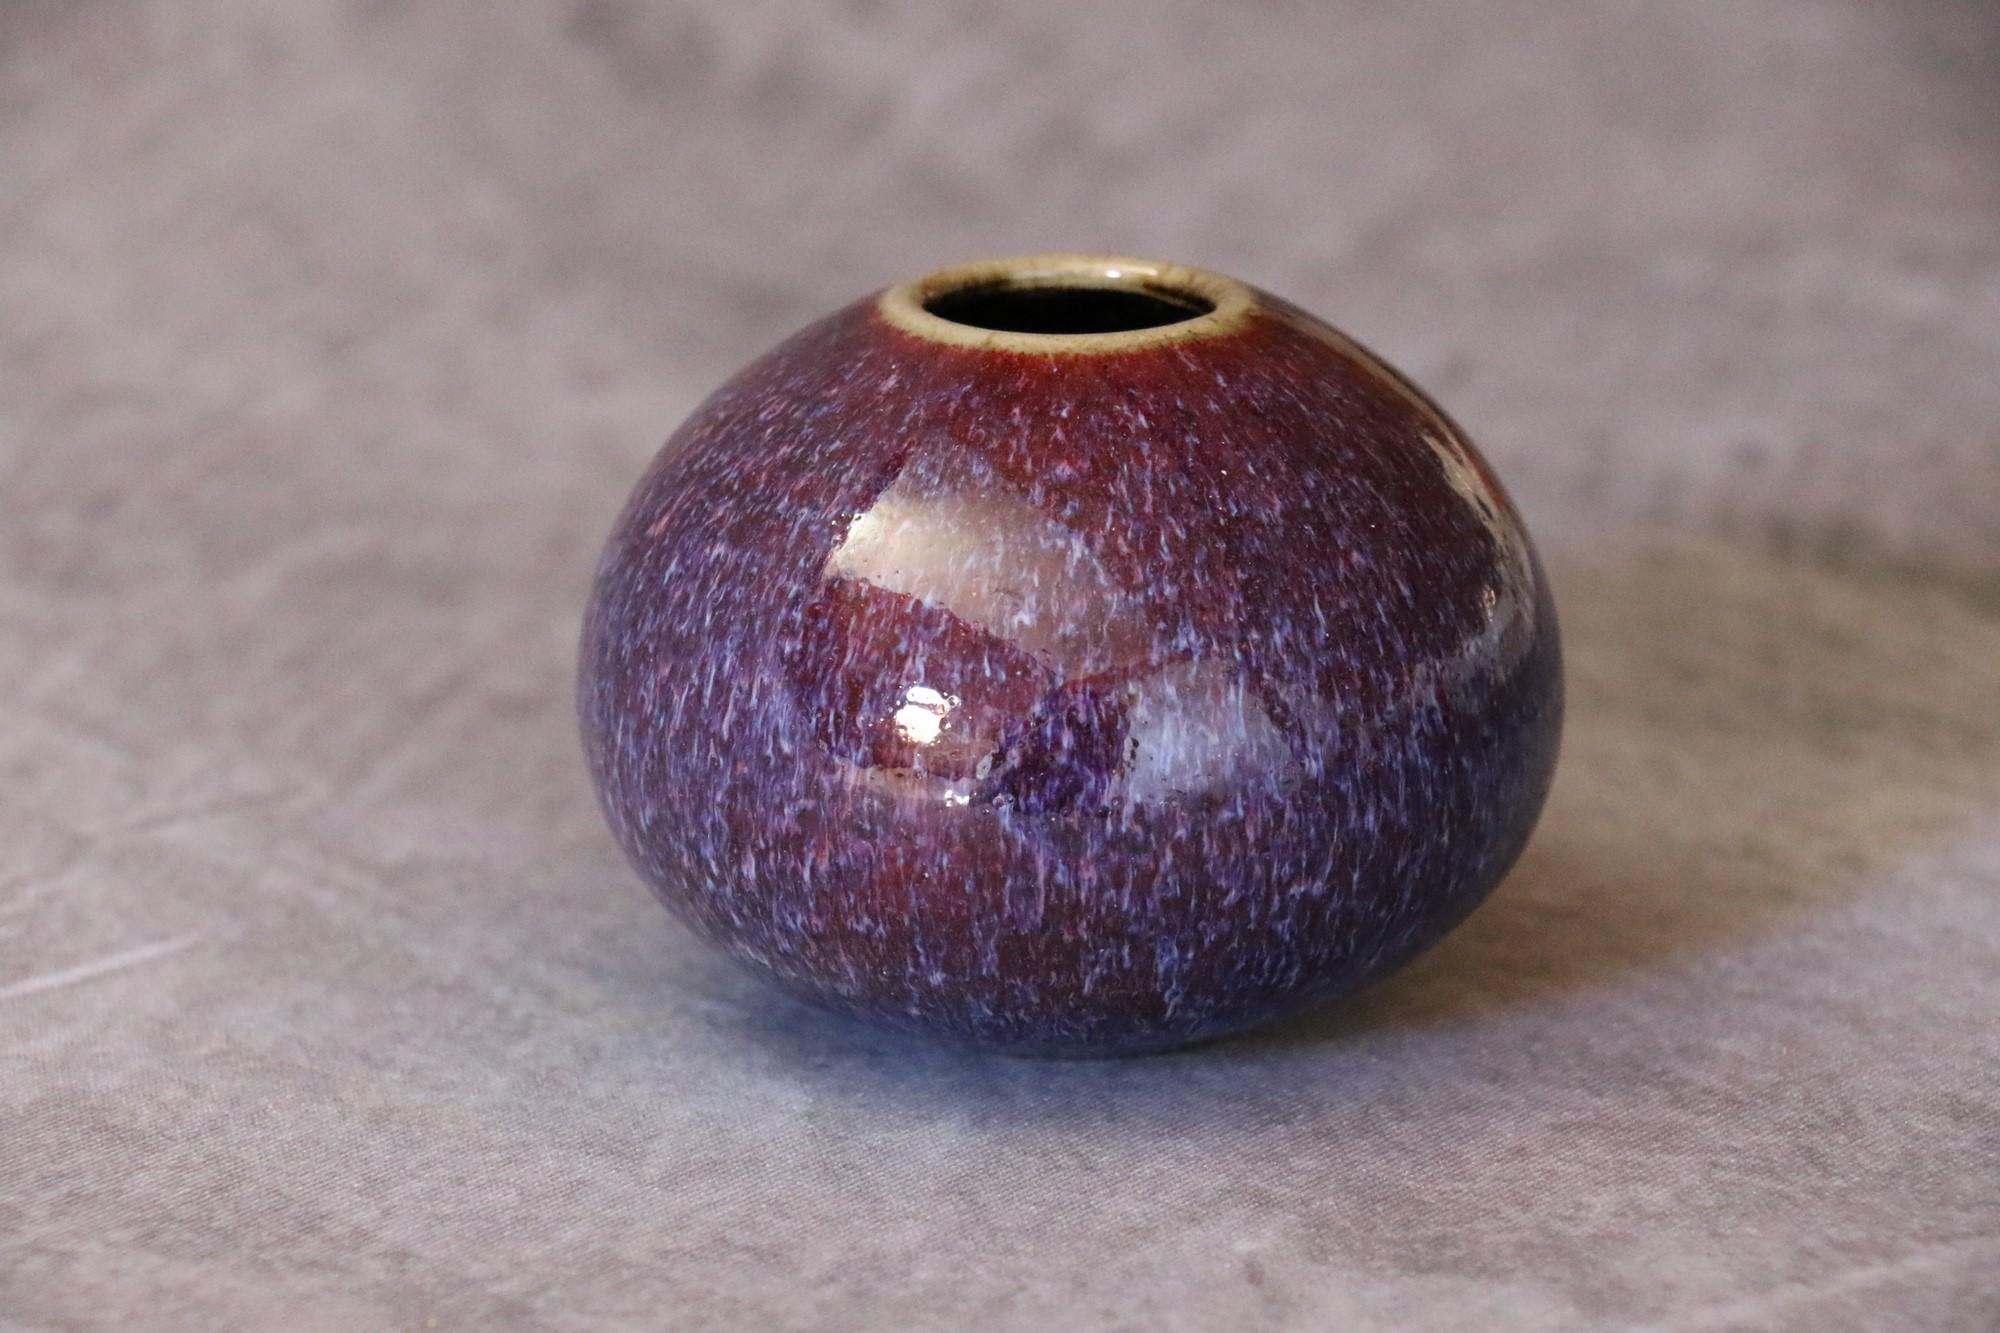 Jarrón bola de cerámica francesa de Marc Uzan - hacia 2000
Delicado esmaltado en tonos morados - Cuello del anillo.
Firmado bajo la base.
Muy buen estado.

--------------------------
Nacido en Susa (Túnez) en 1955, Marc Uzan descubrió el